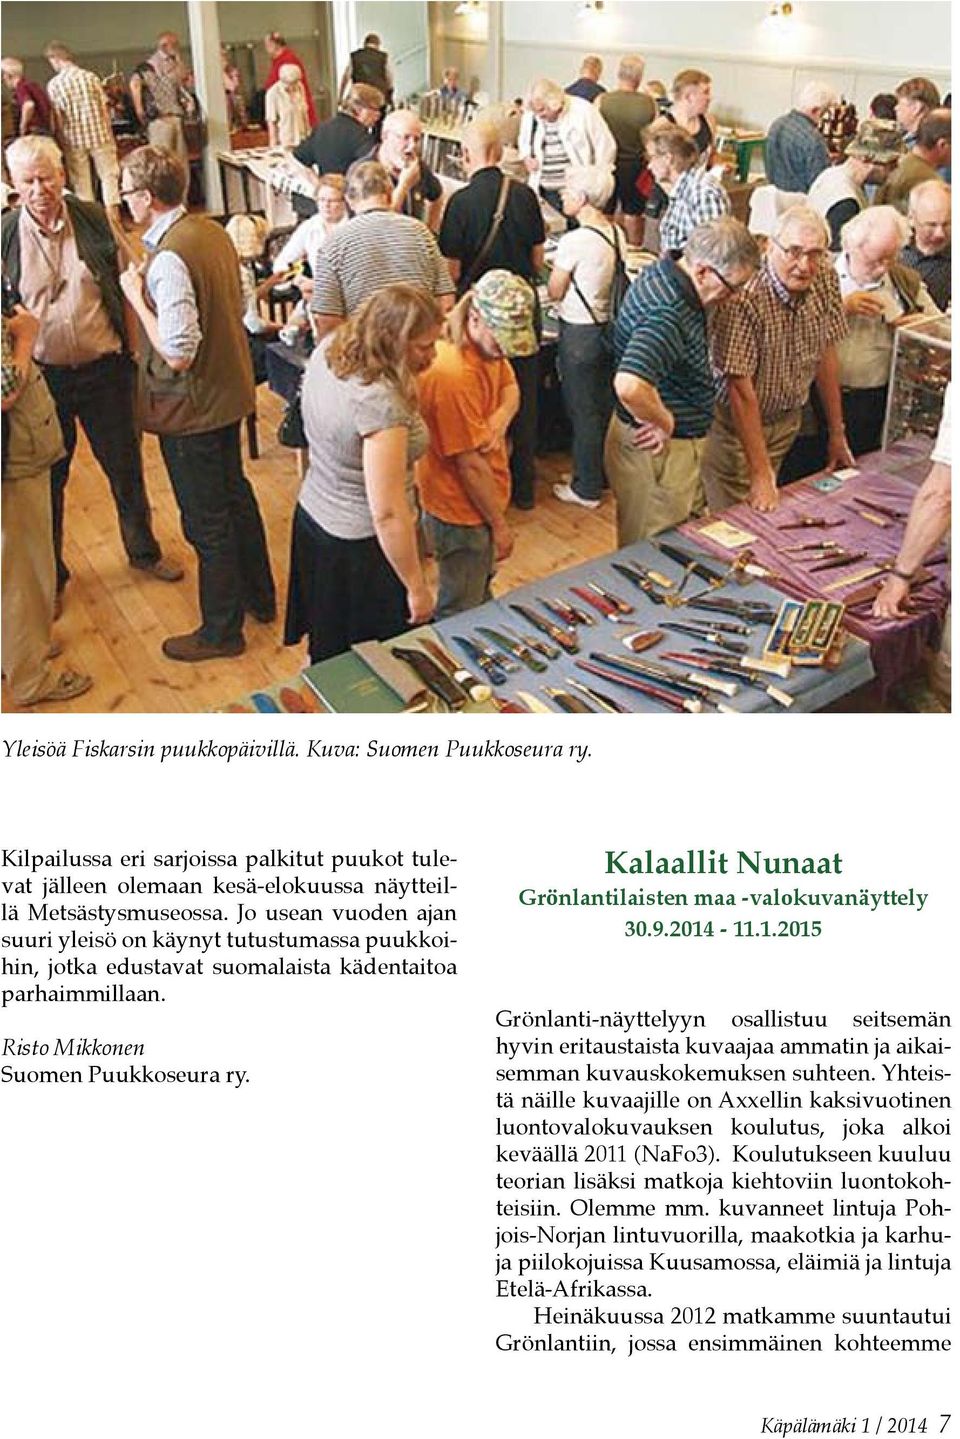 Kalaallit Nunaat Grönlantilaisten maa -valokuvanäyttely 30.9.2014-11.1.2015 Grönlanti-näyttelyyn osallistuu seitsemän hyvin eritaustaista kuvaajaa ammatin ja aikaisemman kuvauskokemuksen suhteen.